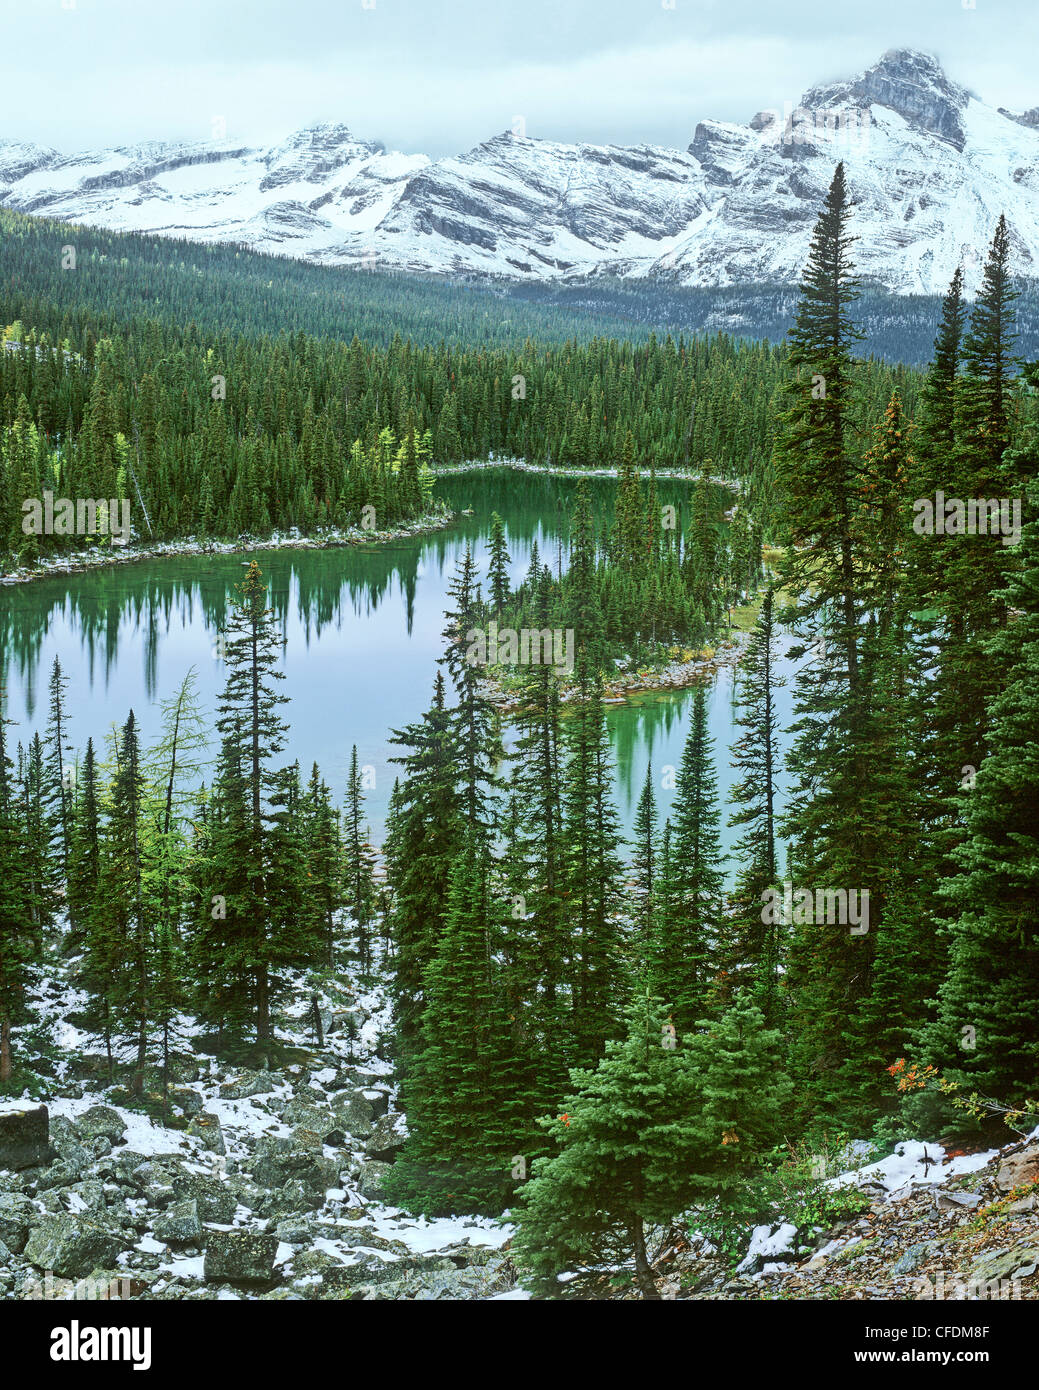 Mary Lake, Yoho National Park, Kootenay Rockies, British Columbia, Canada Stock Photo